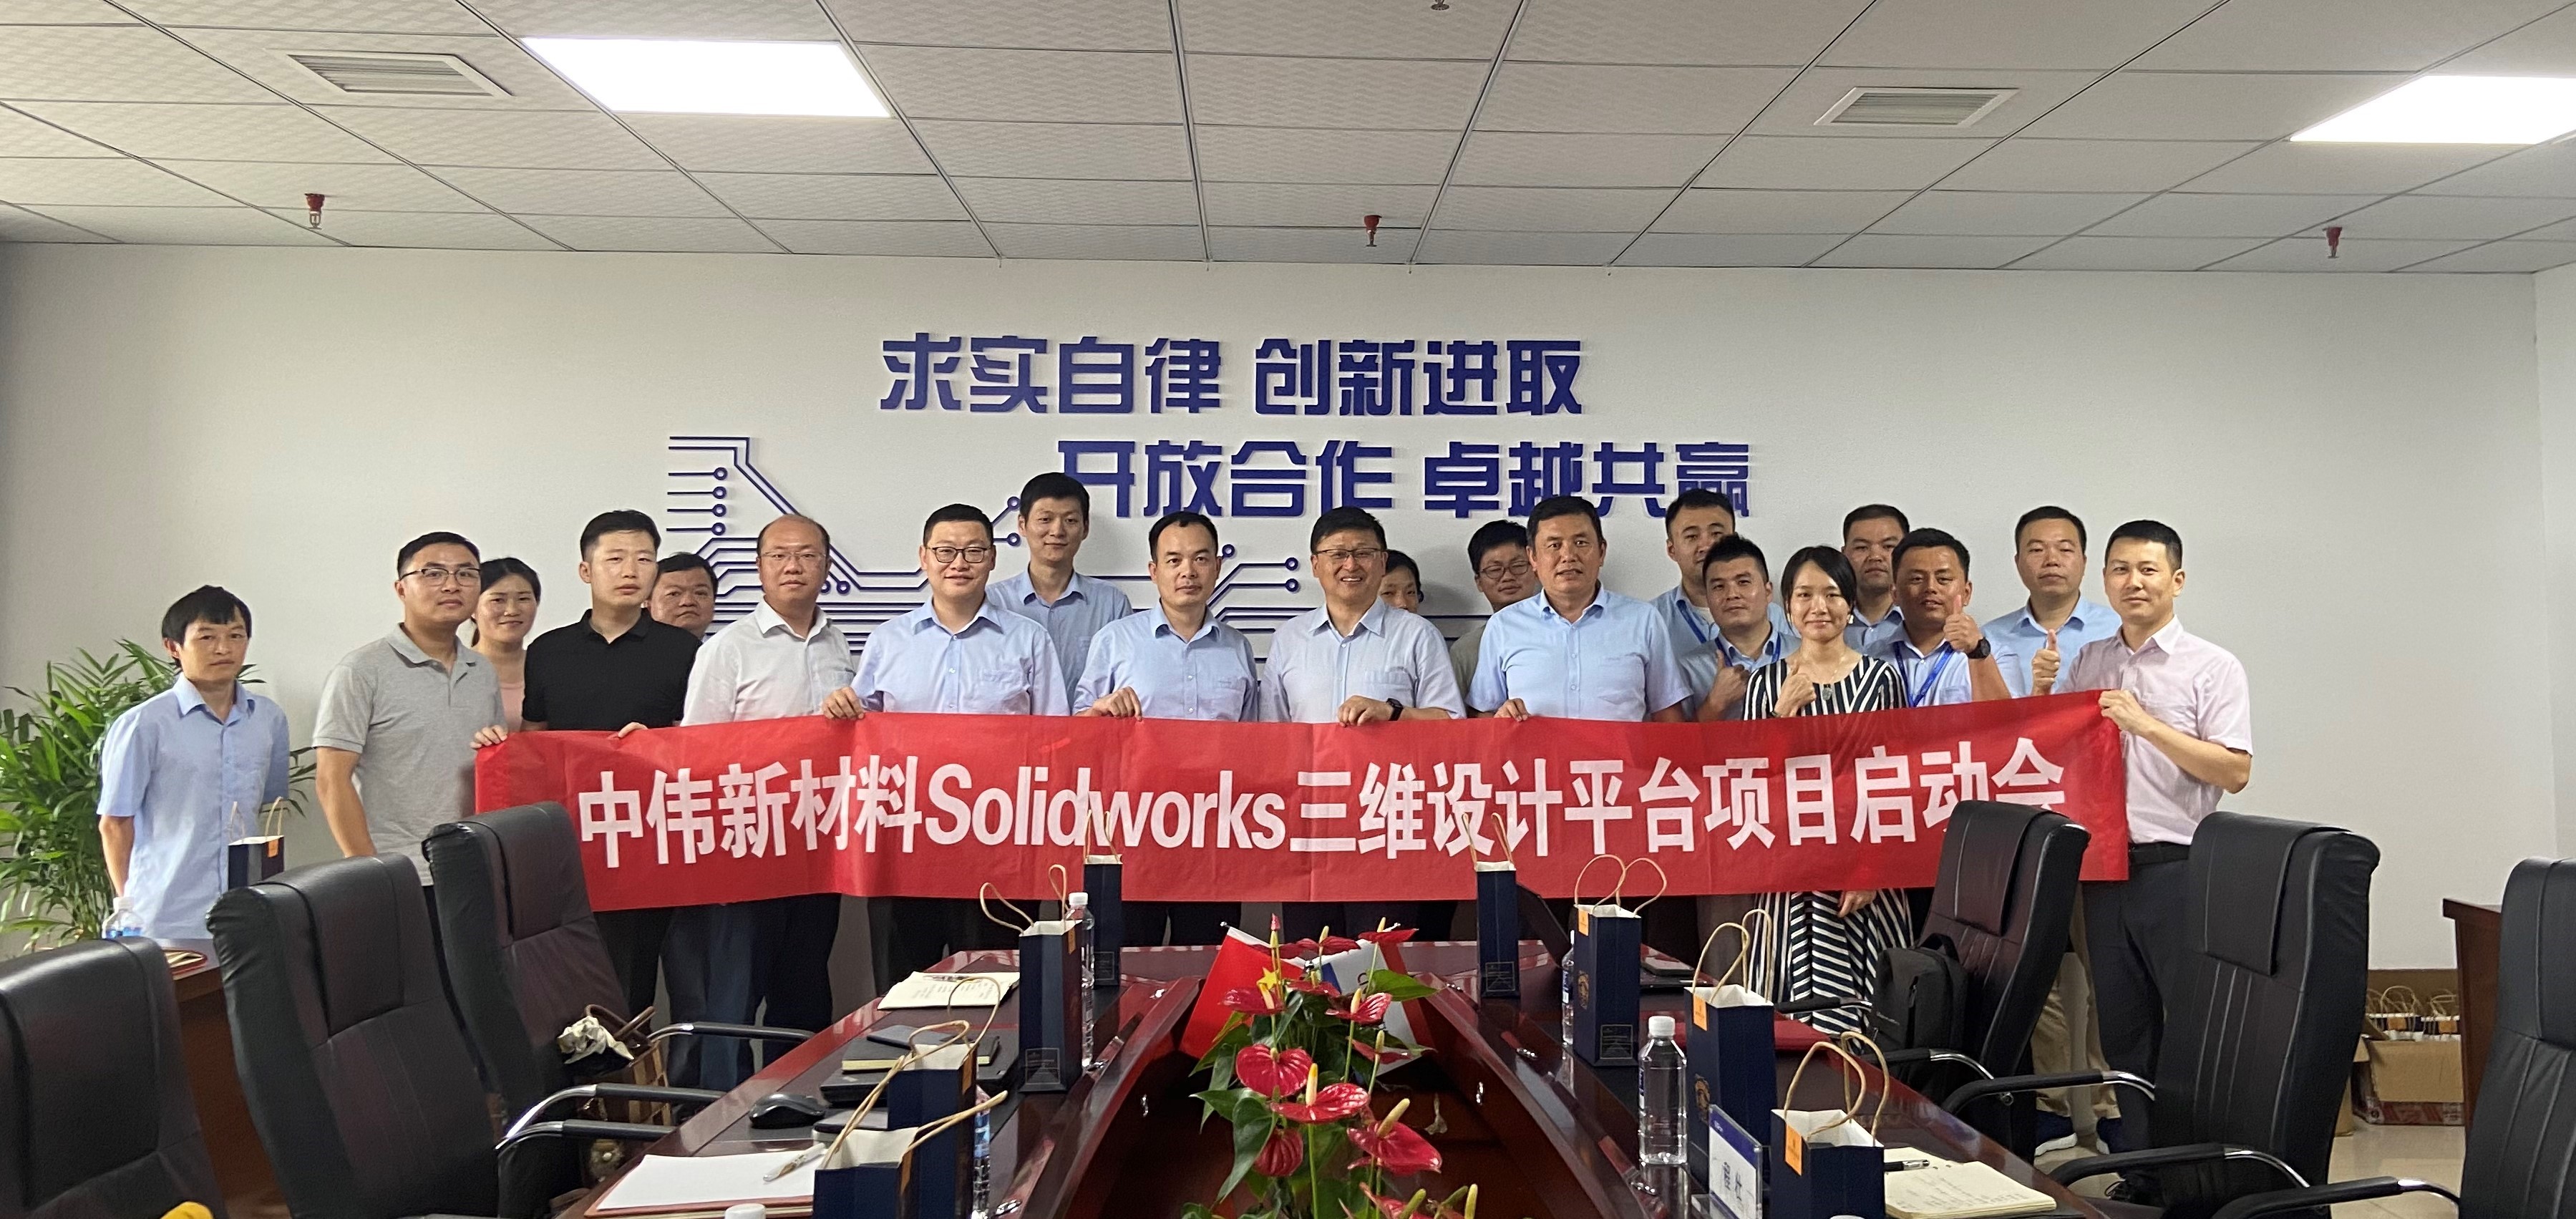 中伟新材料股份有限公司 SOLIDWORKS 三维设计平台项目启动会